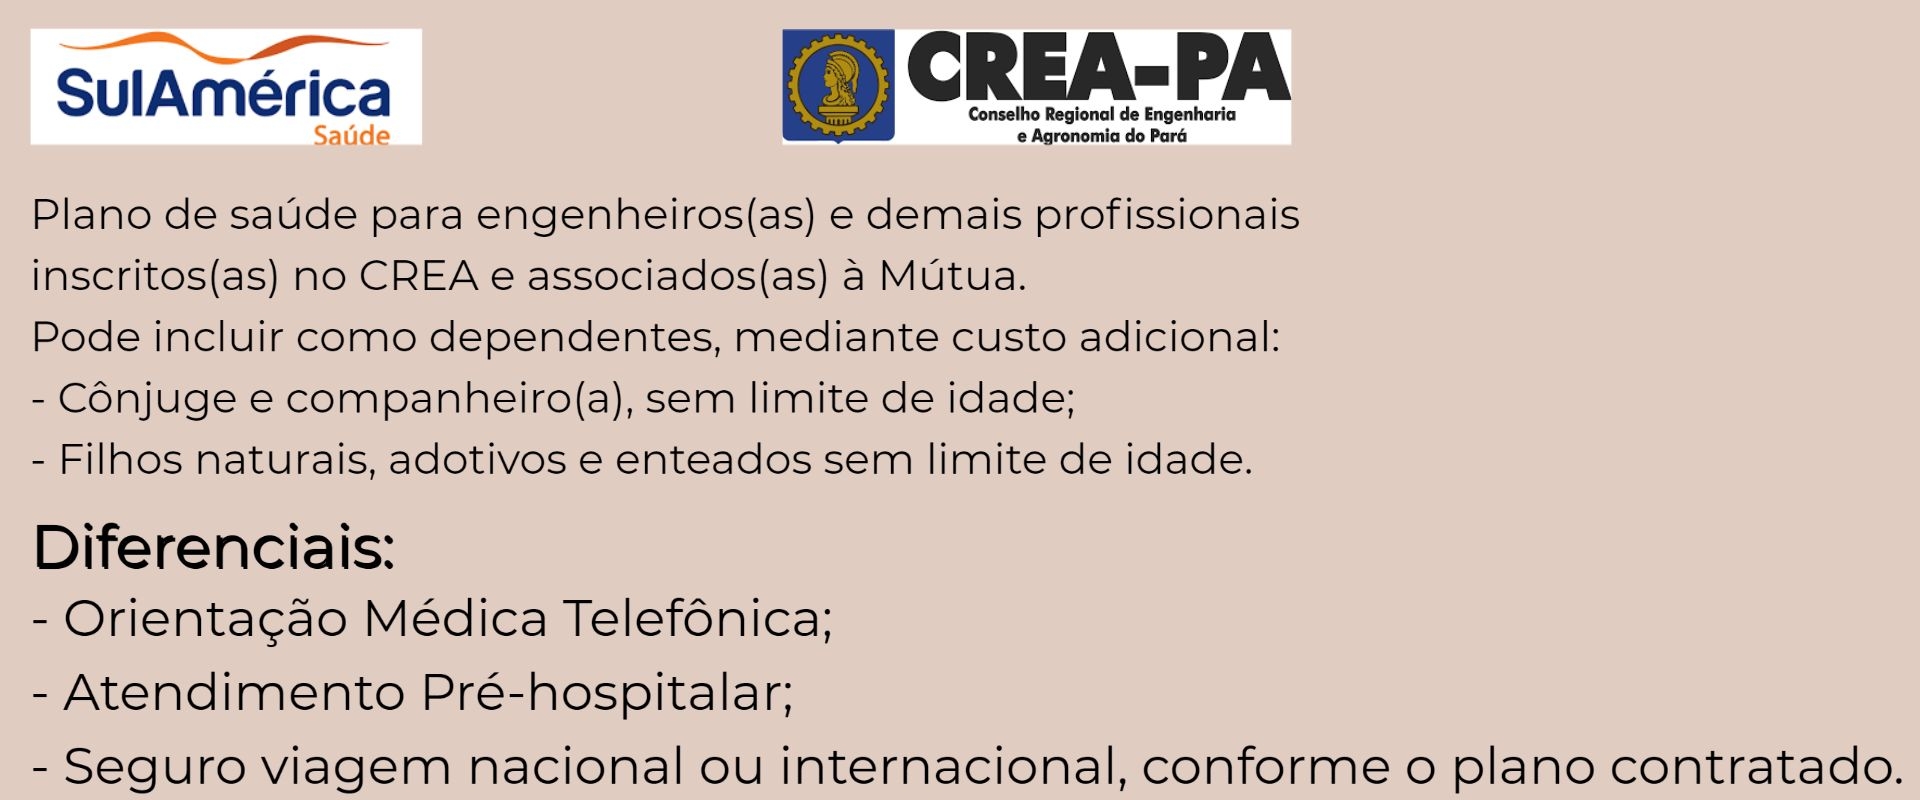 Sul América CREA-PA